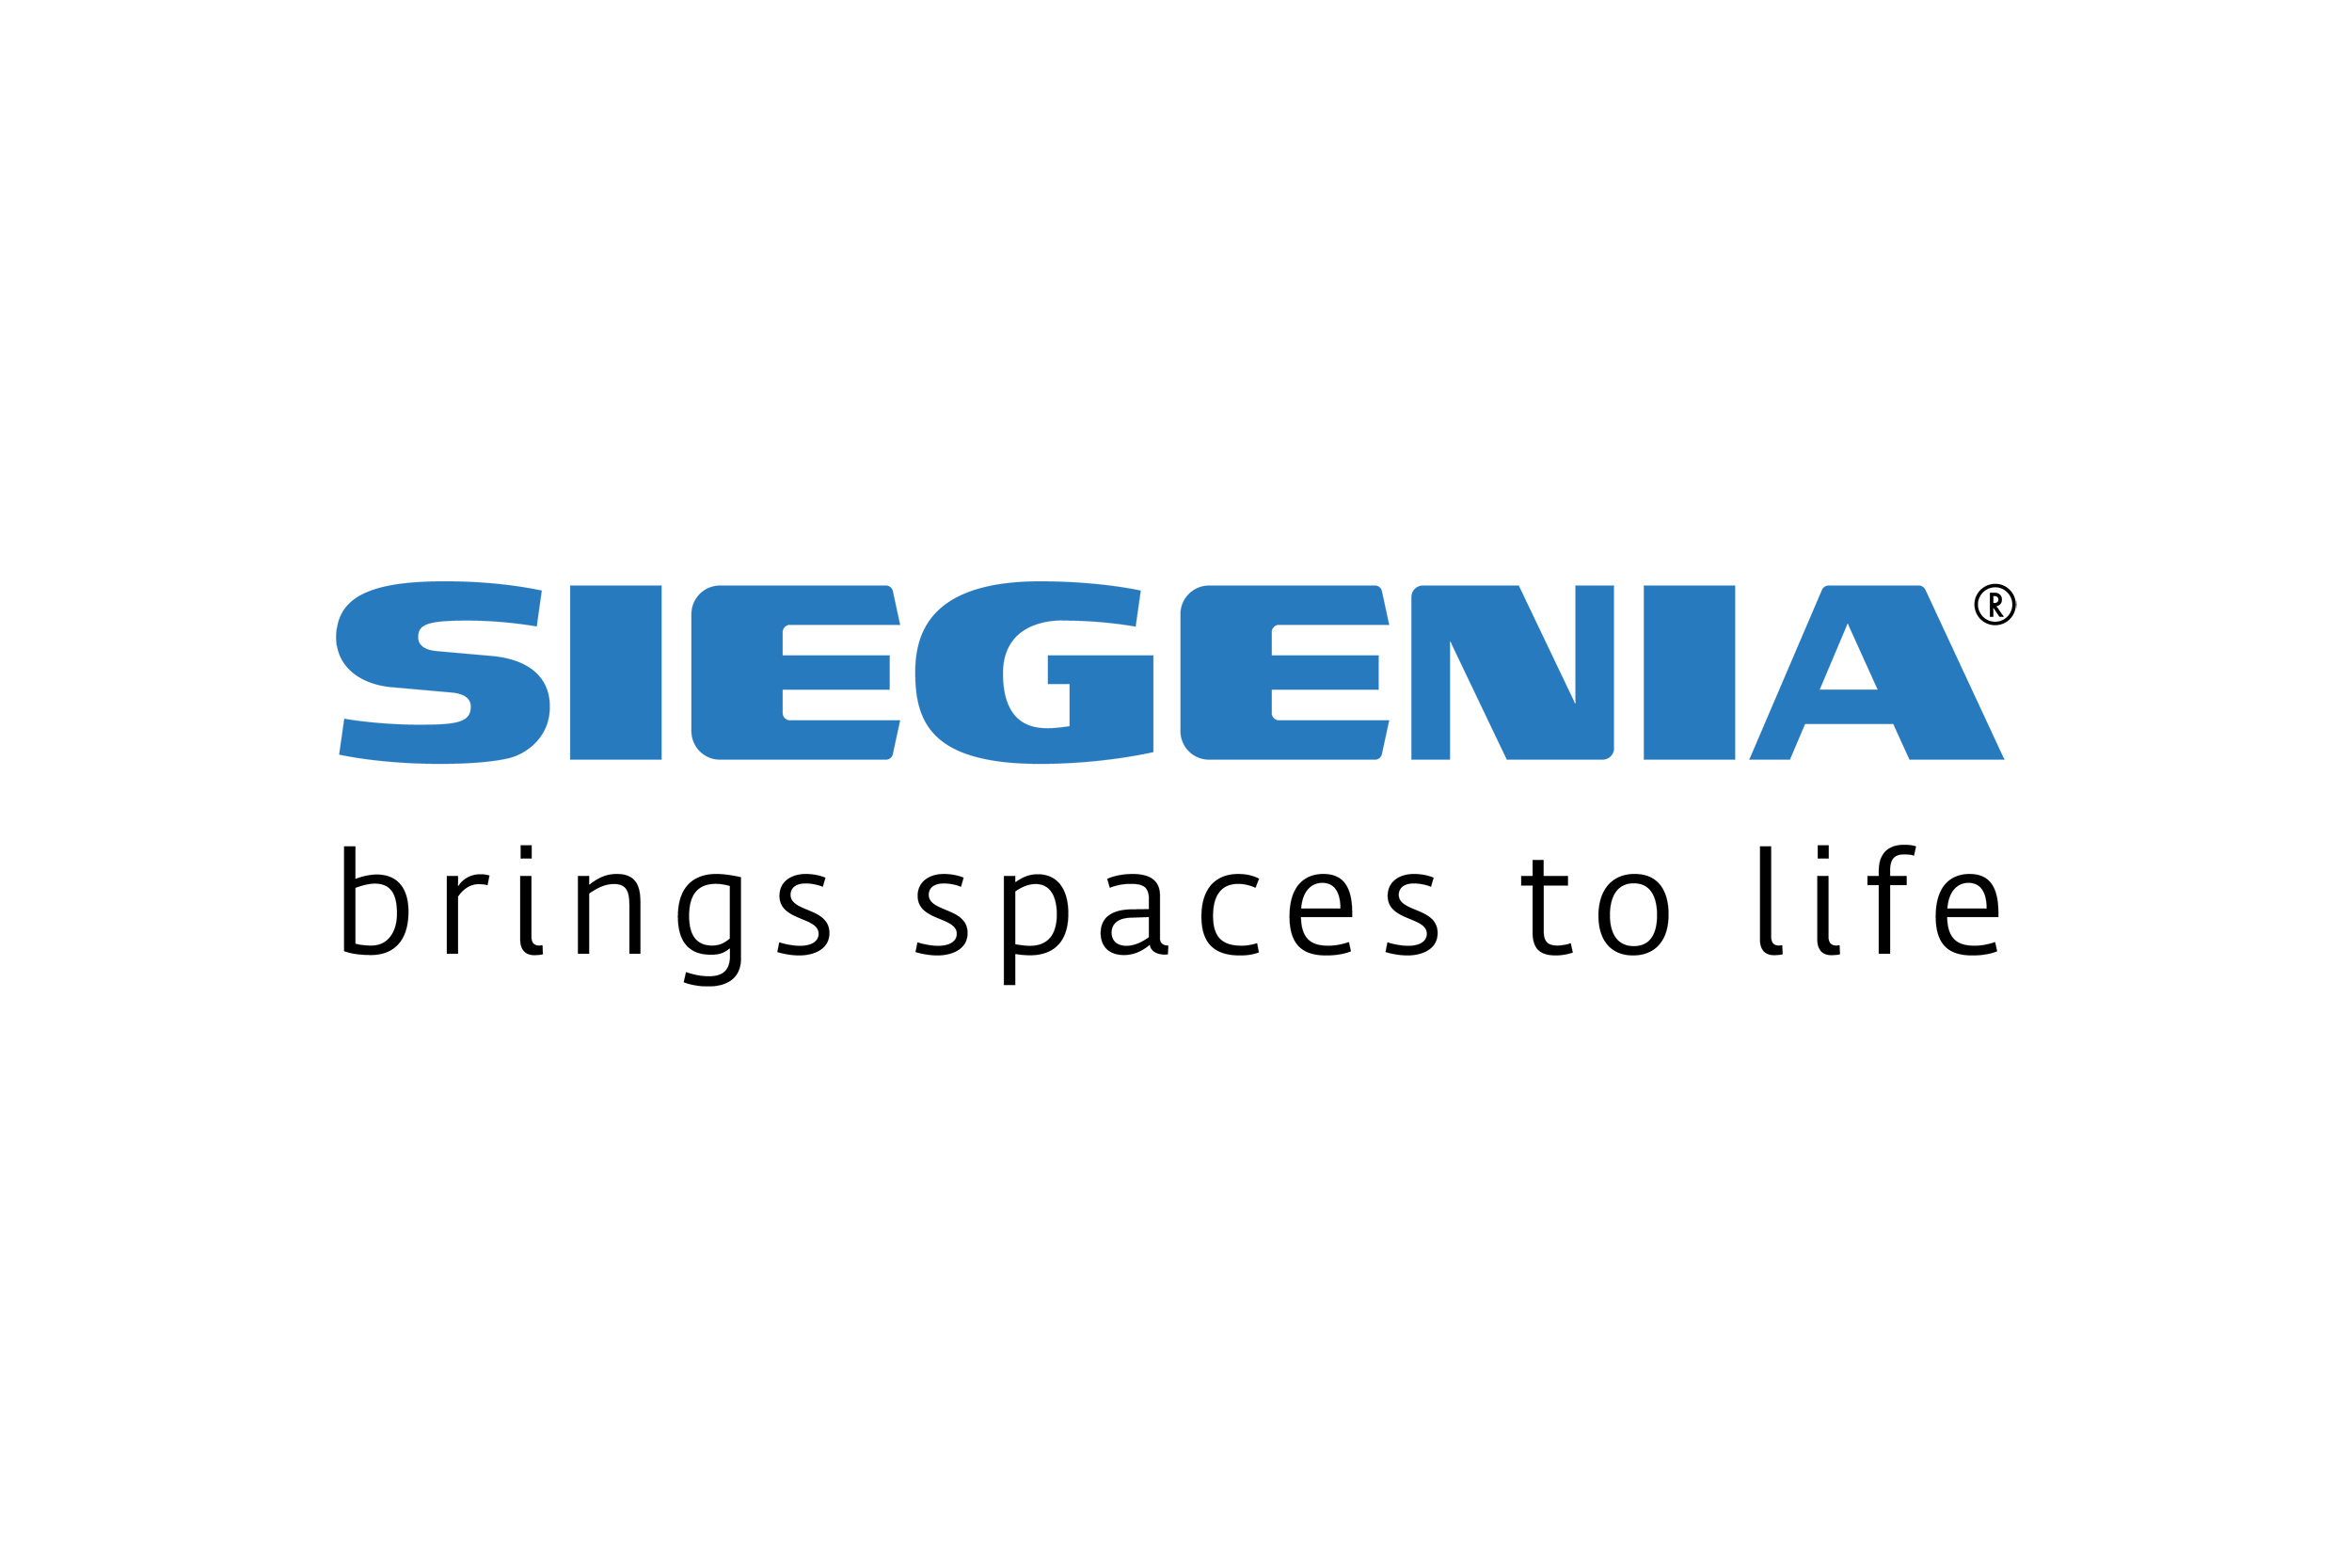 Siegenia logo